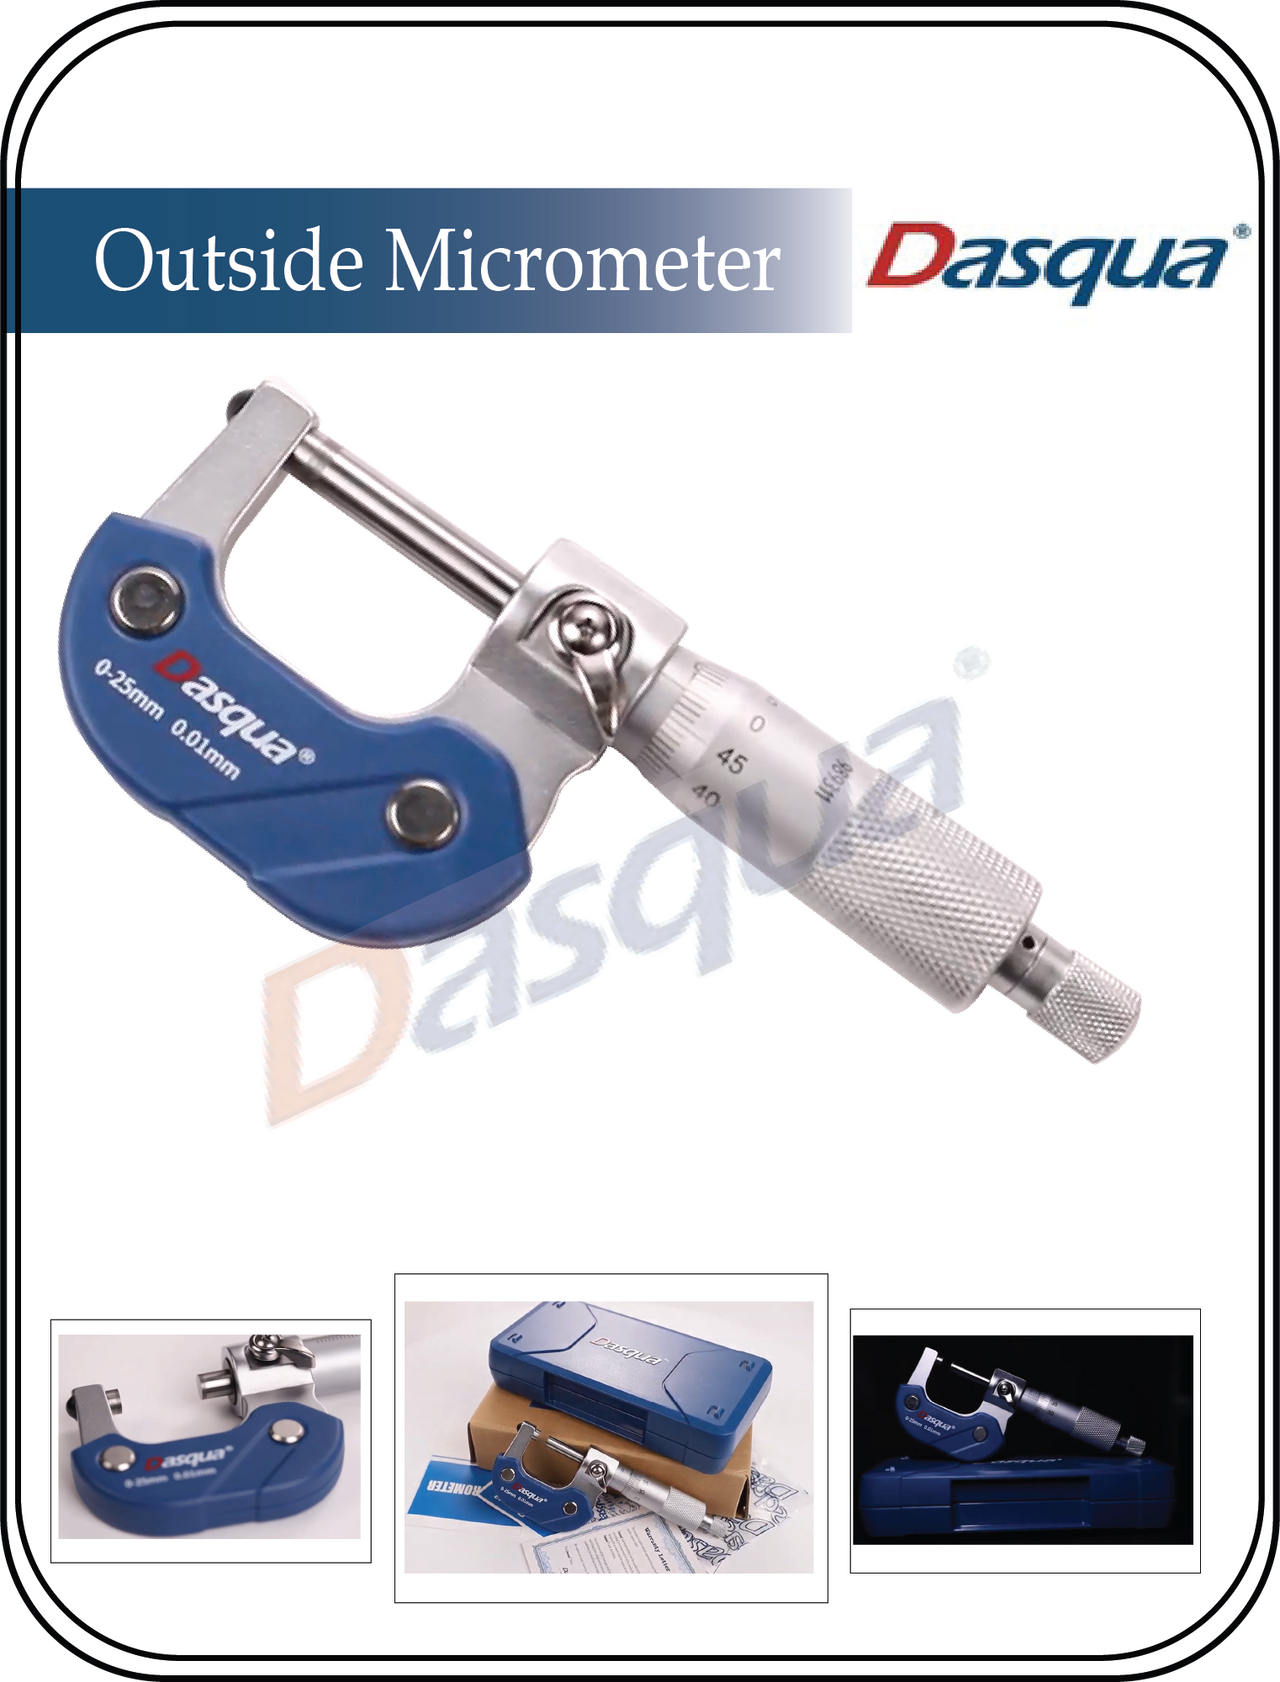 Dasqua outside micrometer